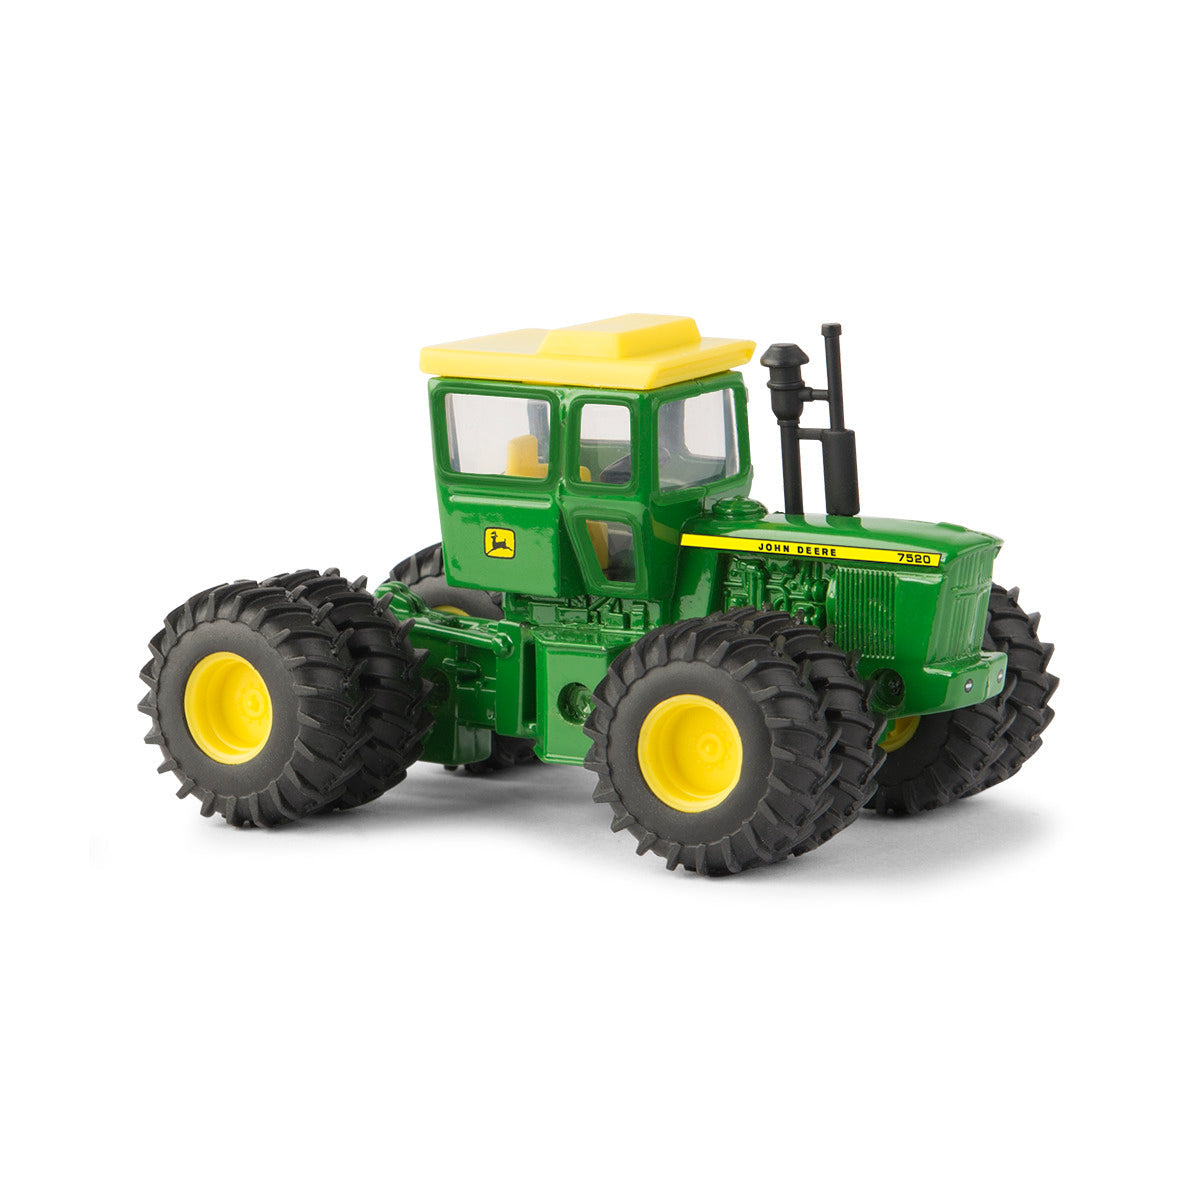 1/64 John Deere 7520 Tractor Toy - LP68836